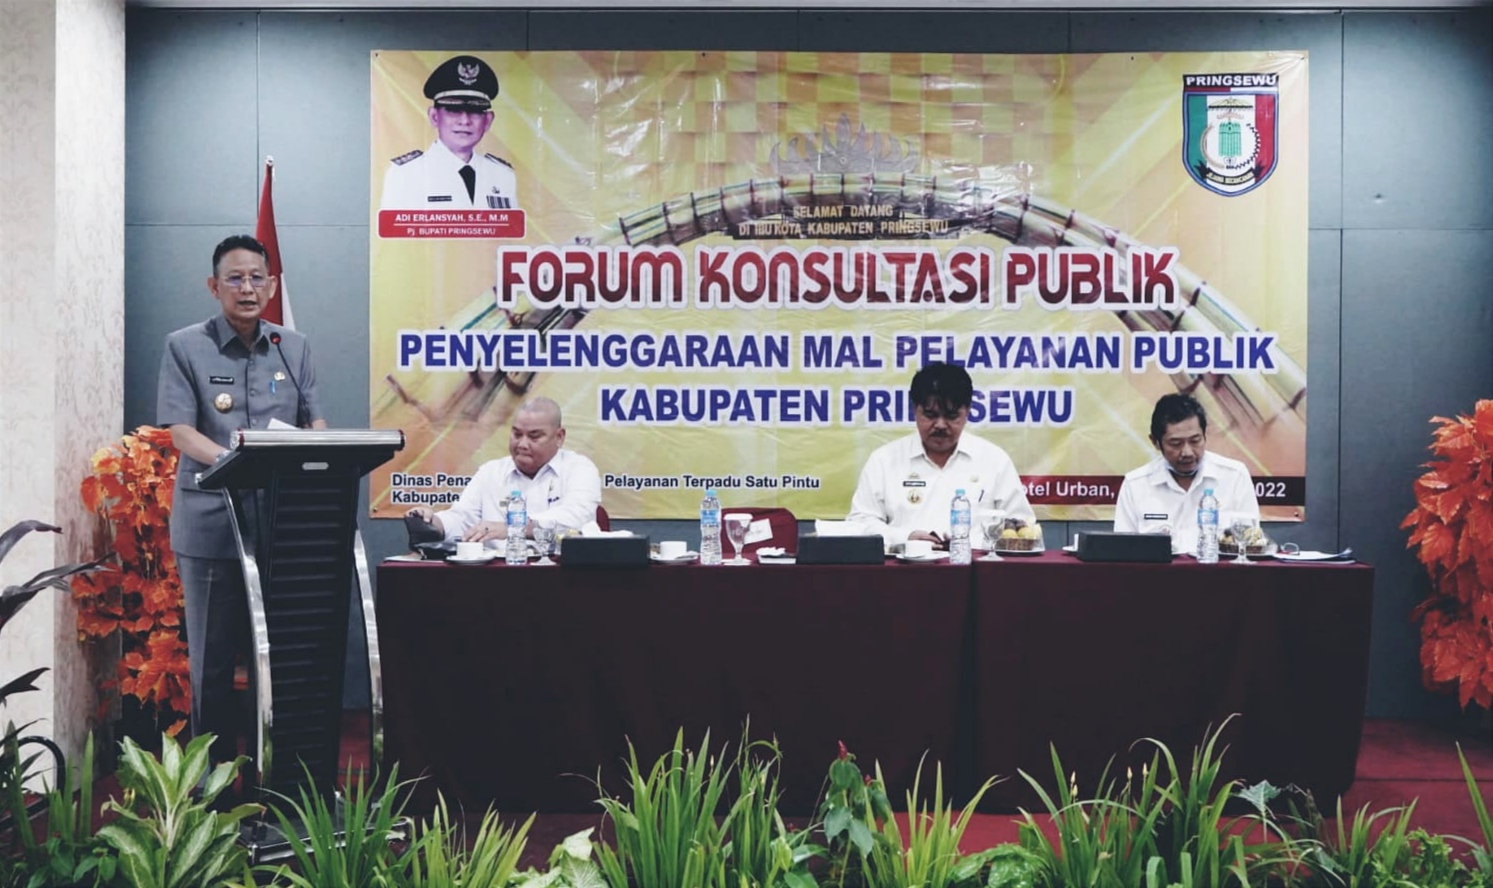 Forum Konsultasi Publik Pembangunan MPP di Pringsewu, Hasilnya...